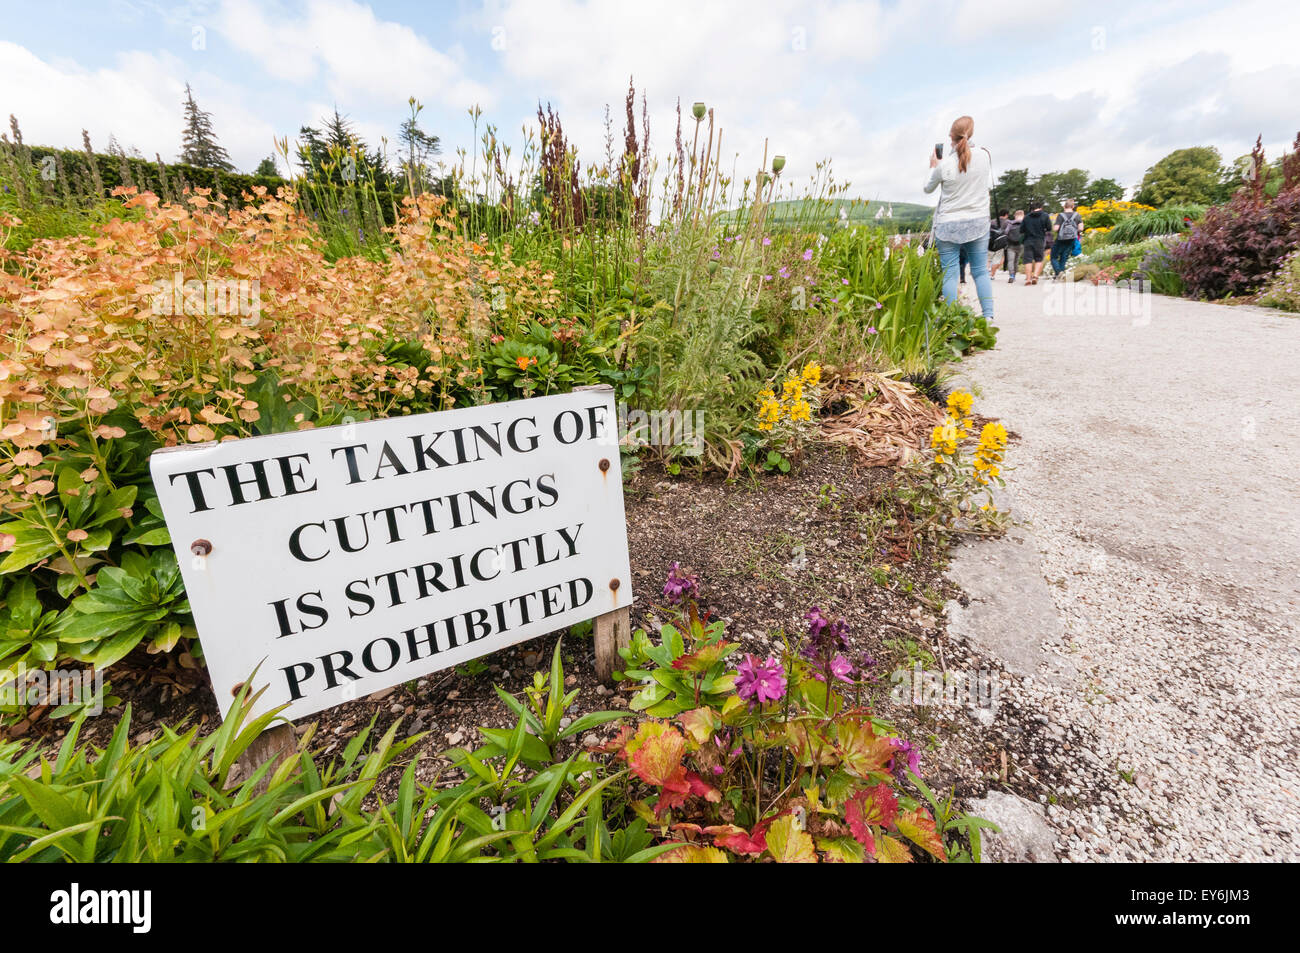 Melden Sie sich bei einem formalen Garten Warnung Besucher nicht Stecklinge nehmen Stockfoto